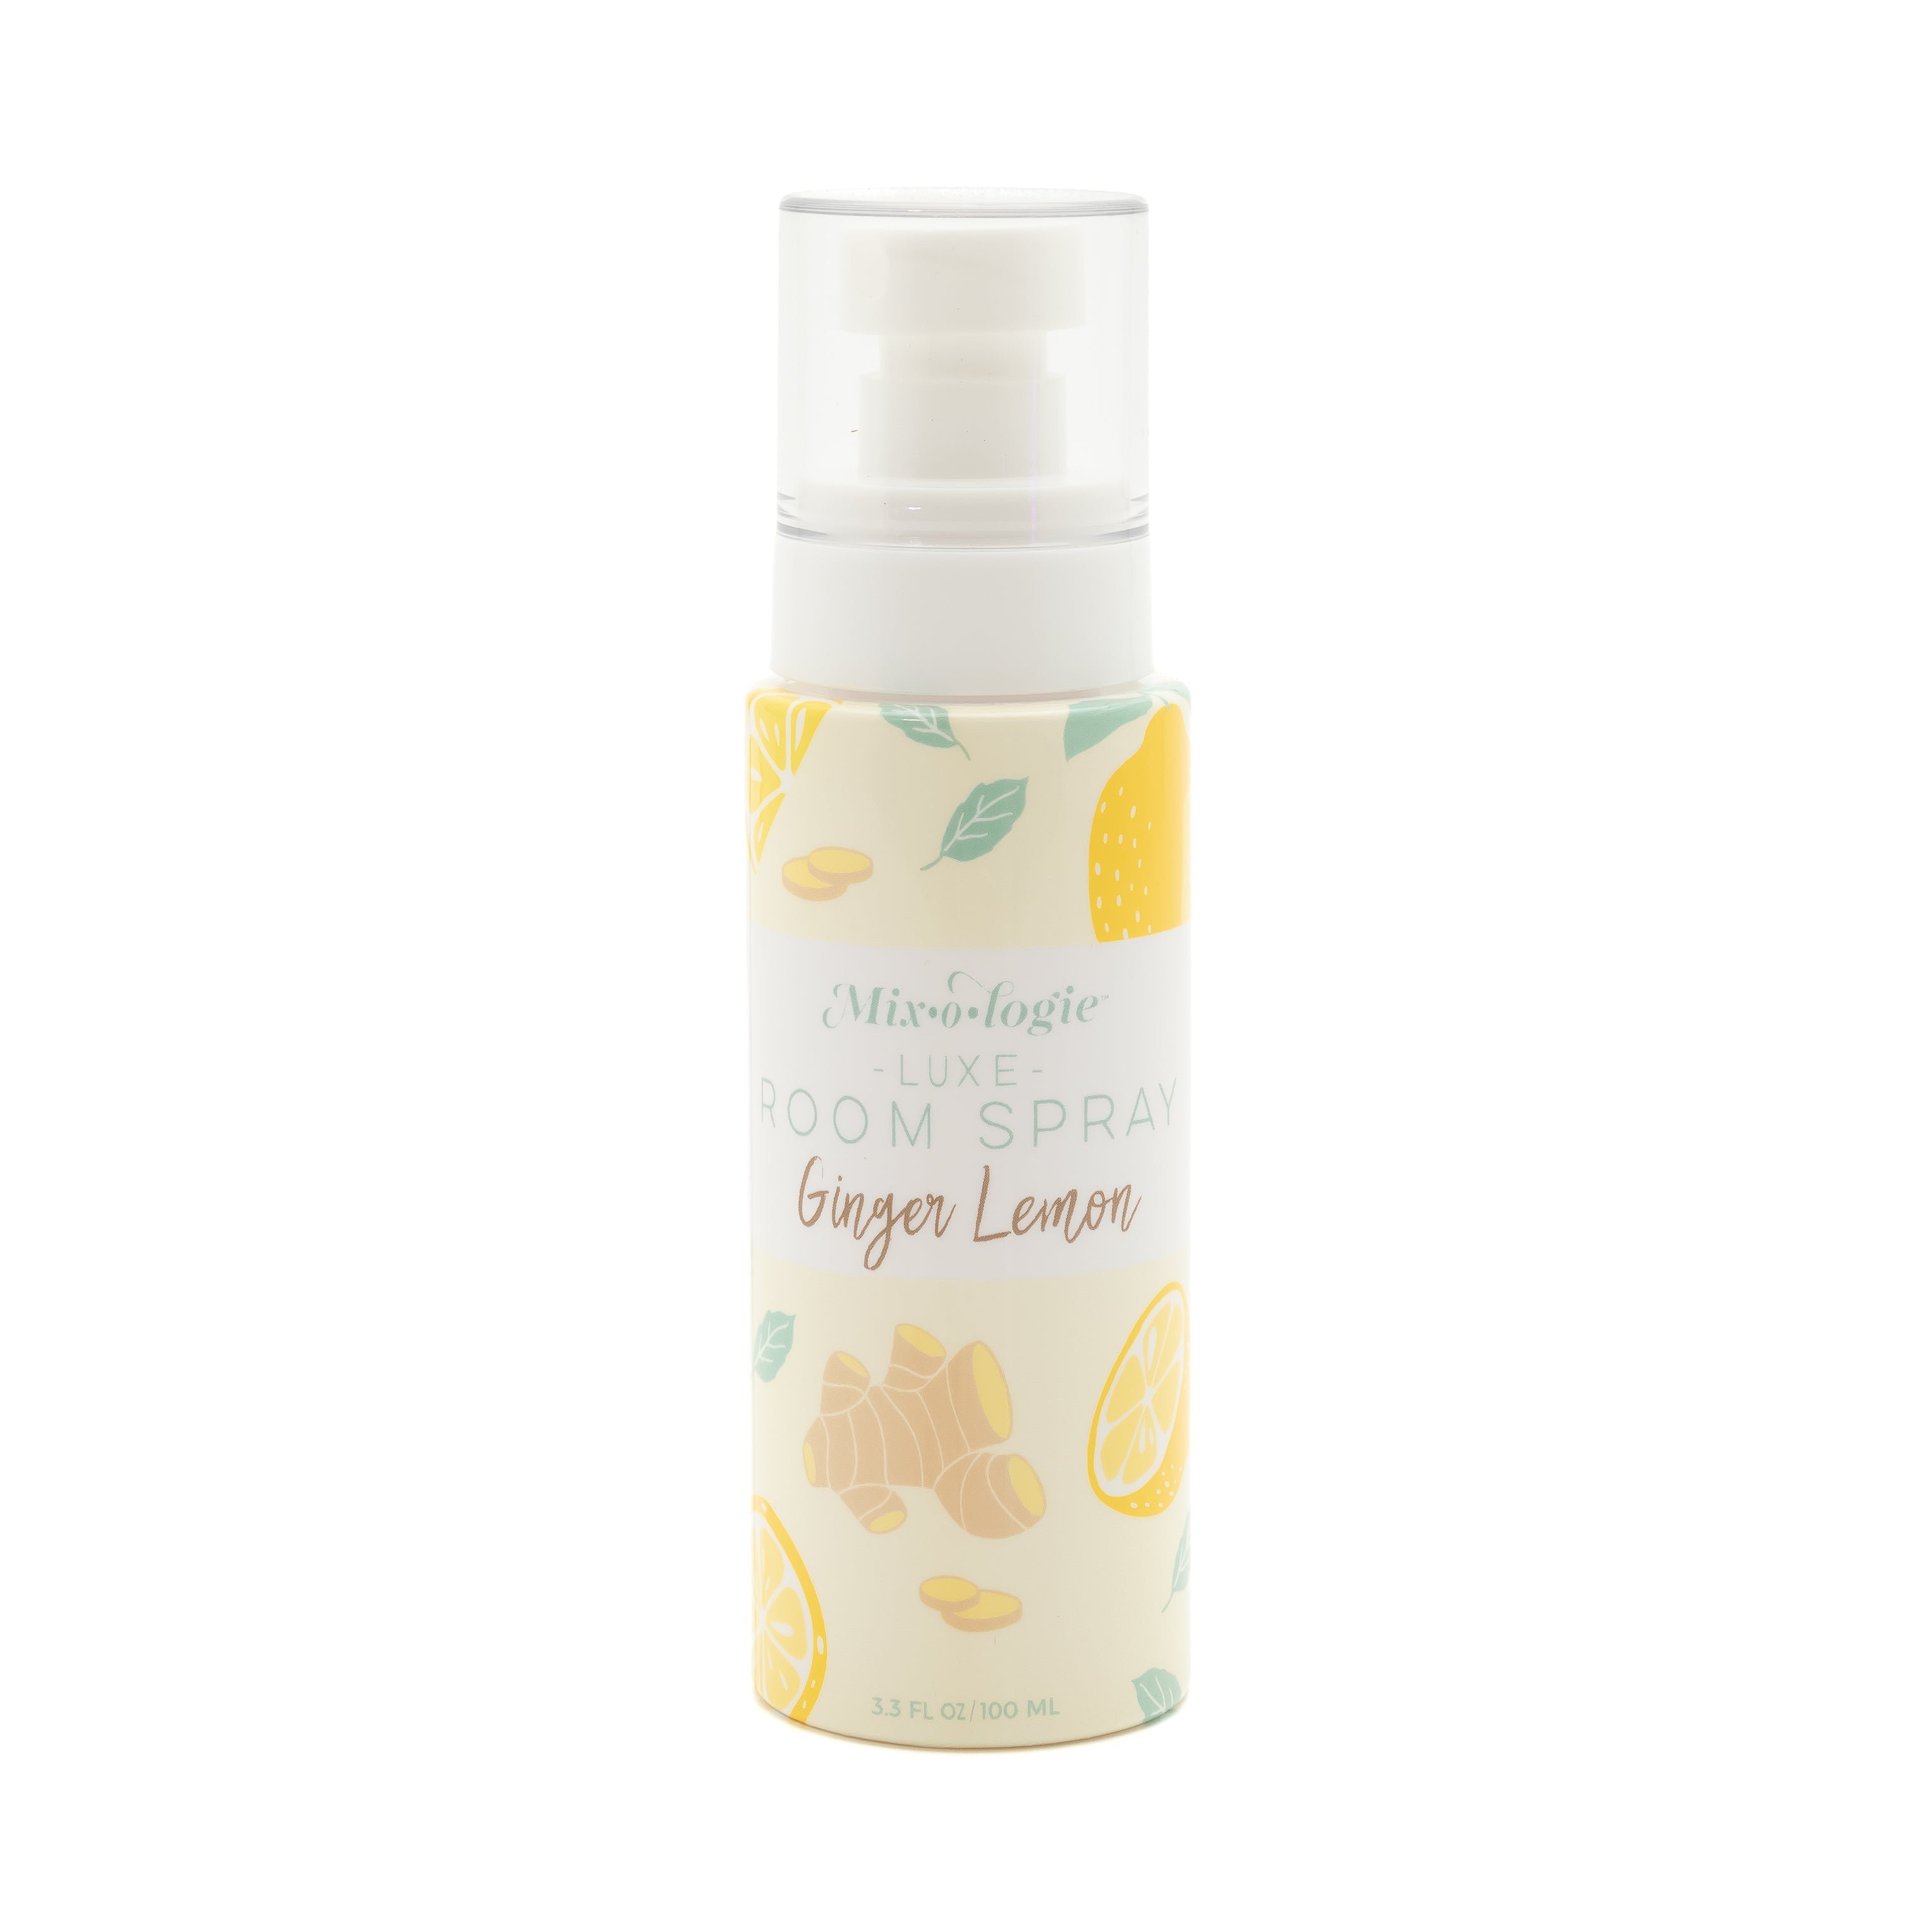 Luxe Room Spray - Ginger Lemon